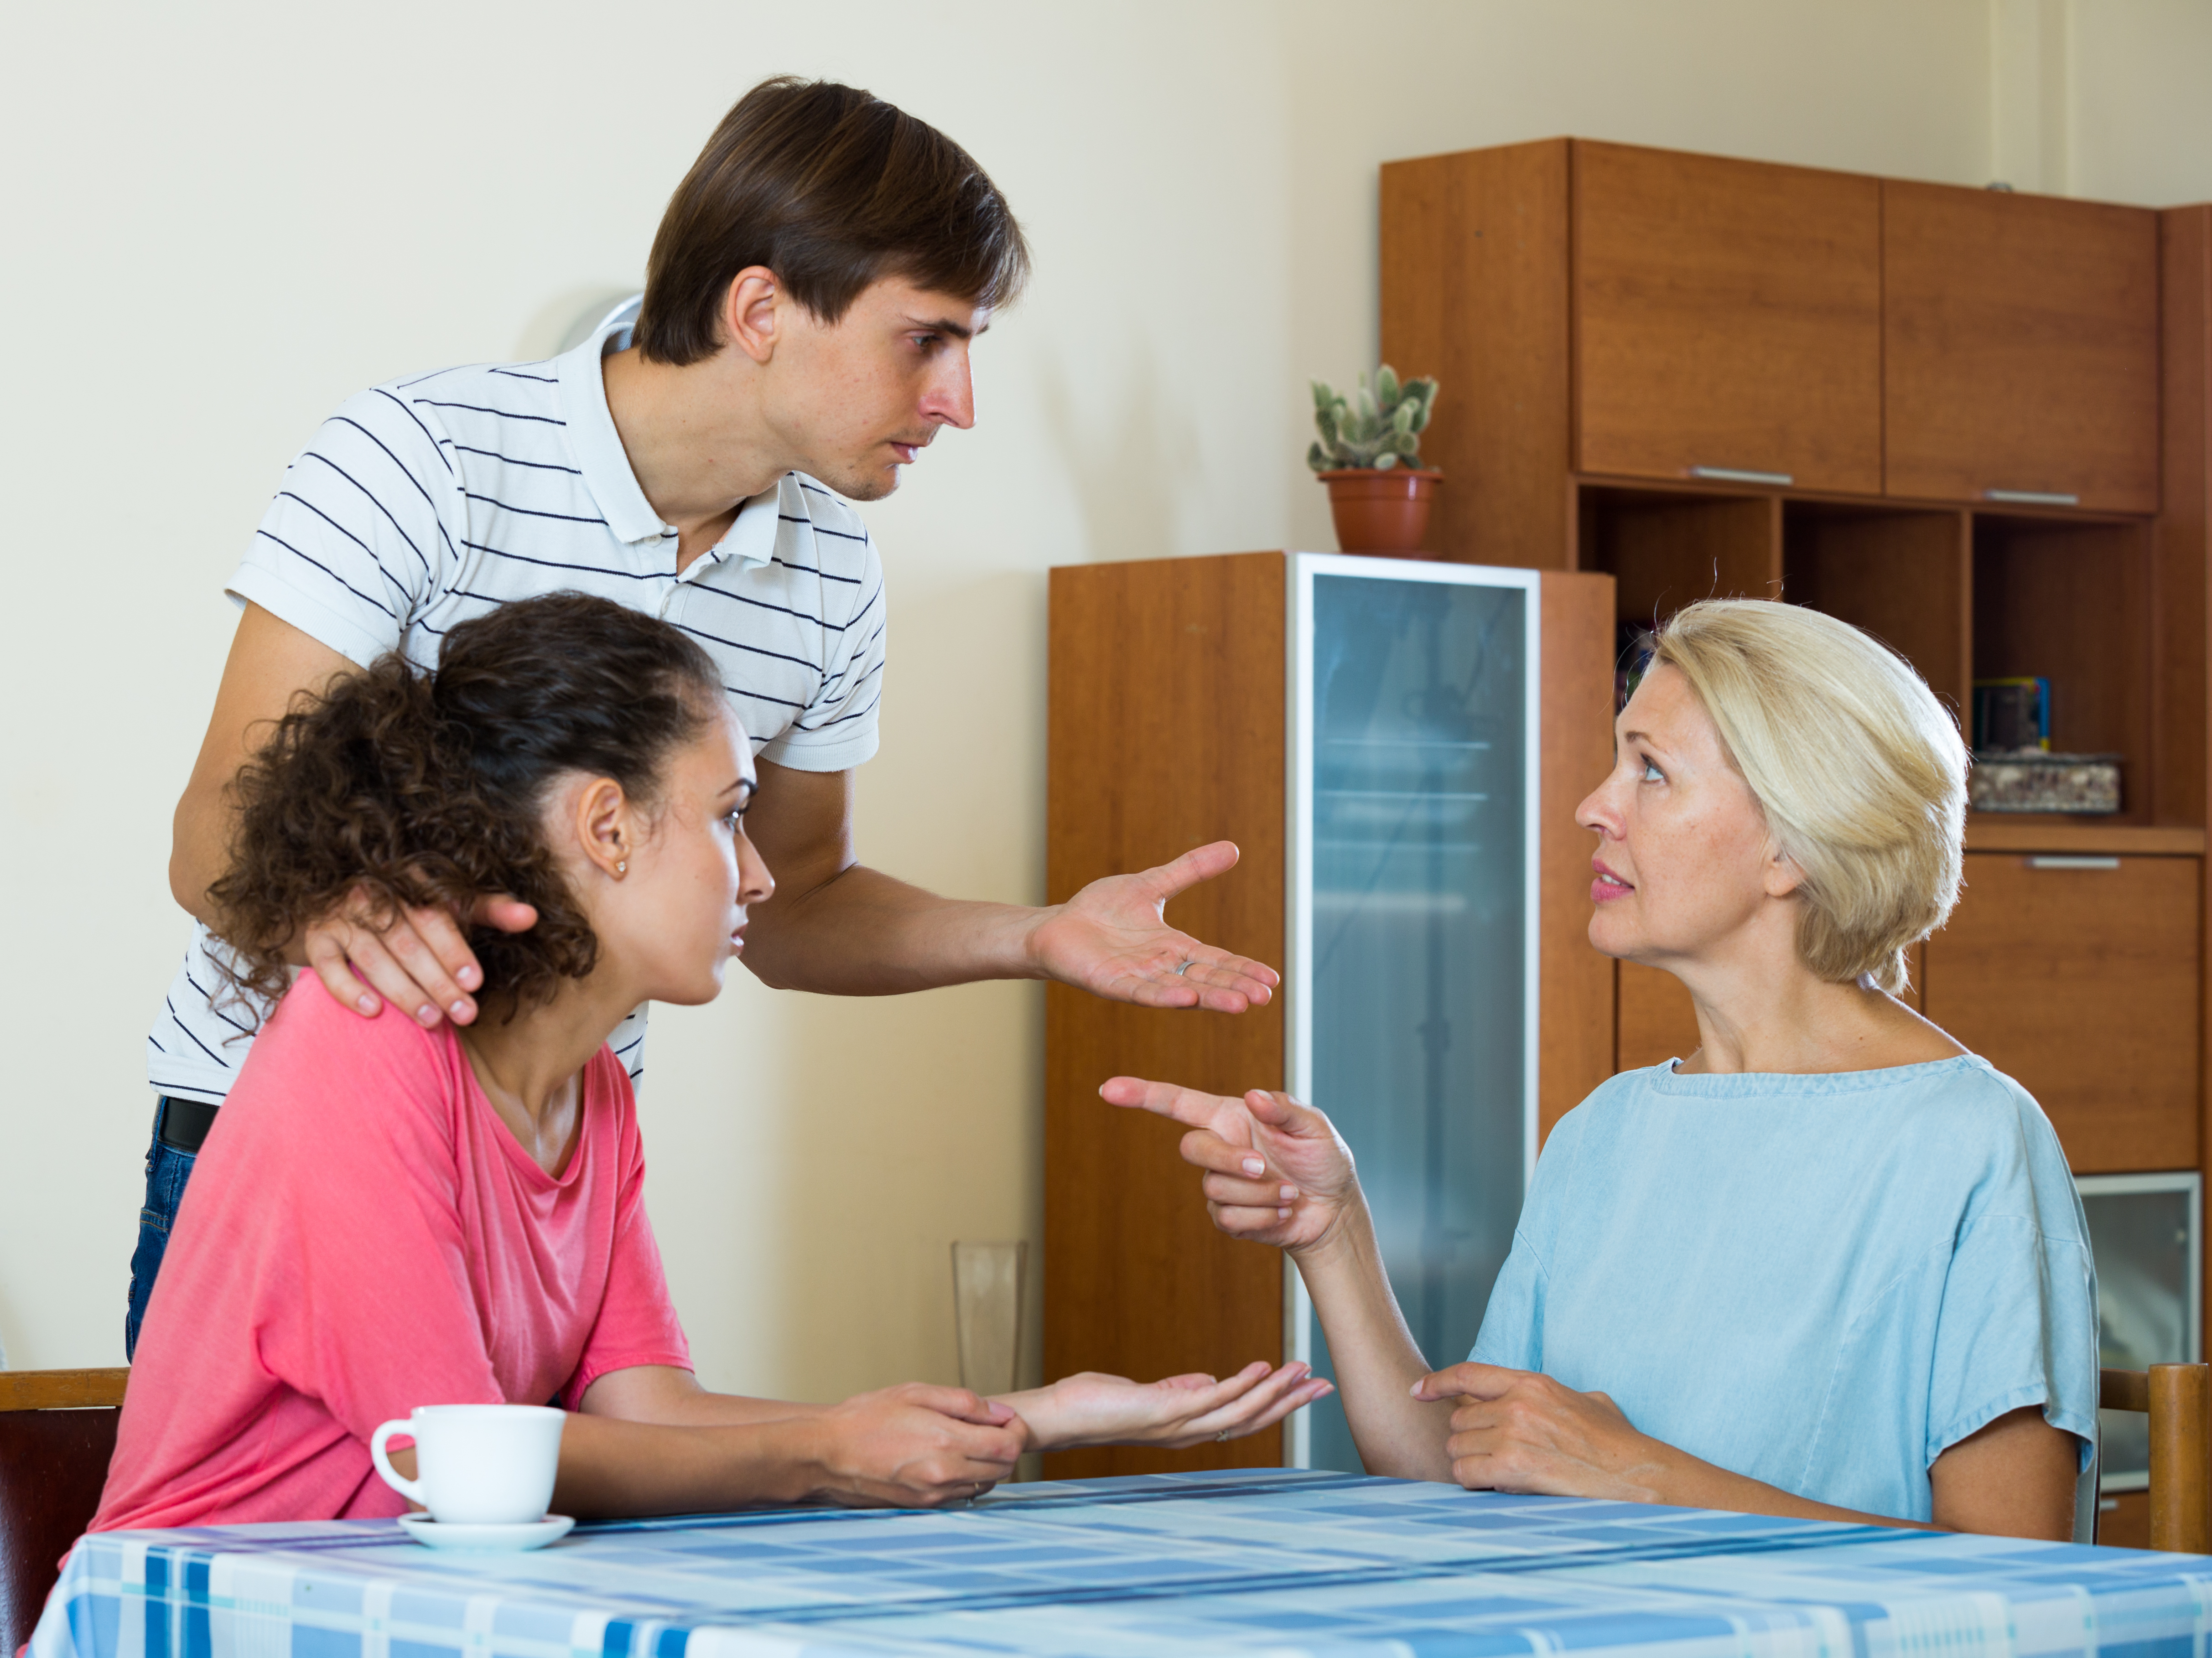 Um jovem casal conversando com uma mulher mais velha | Fonte: Shutterstock